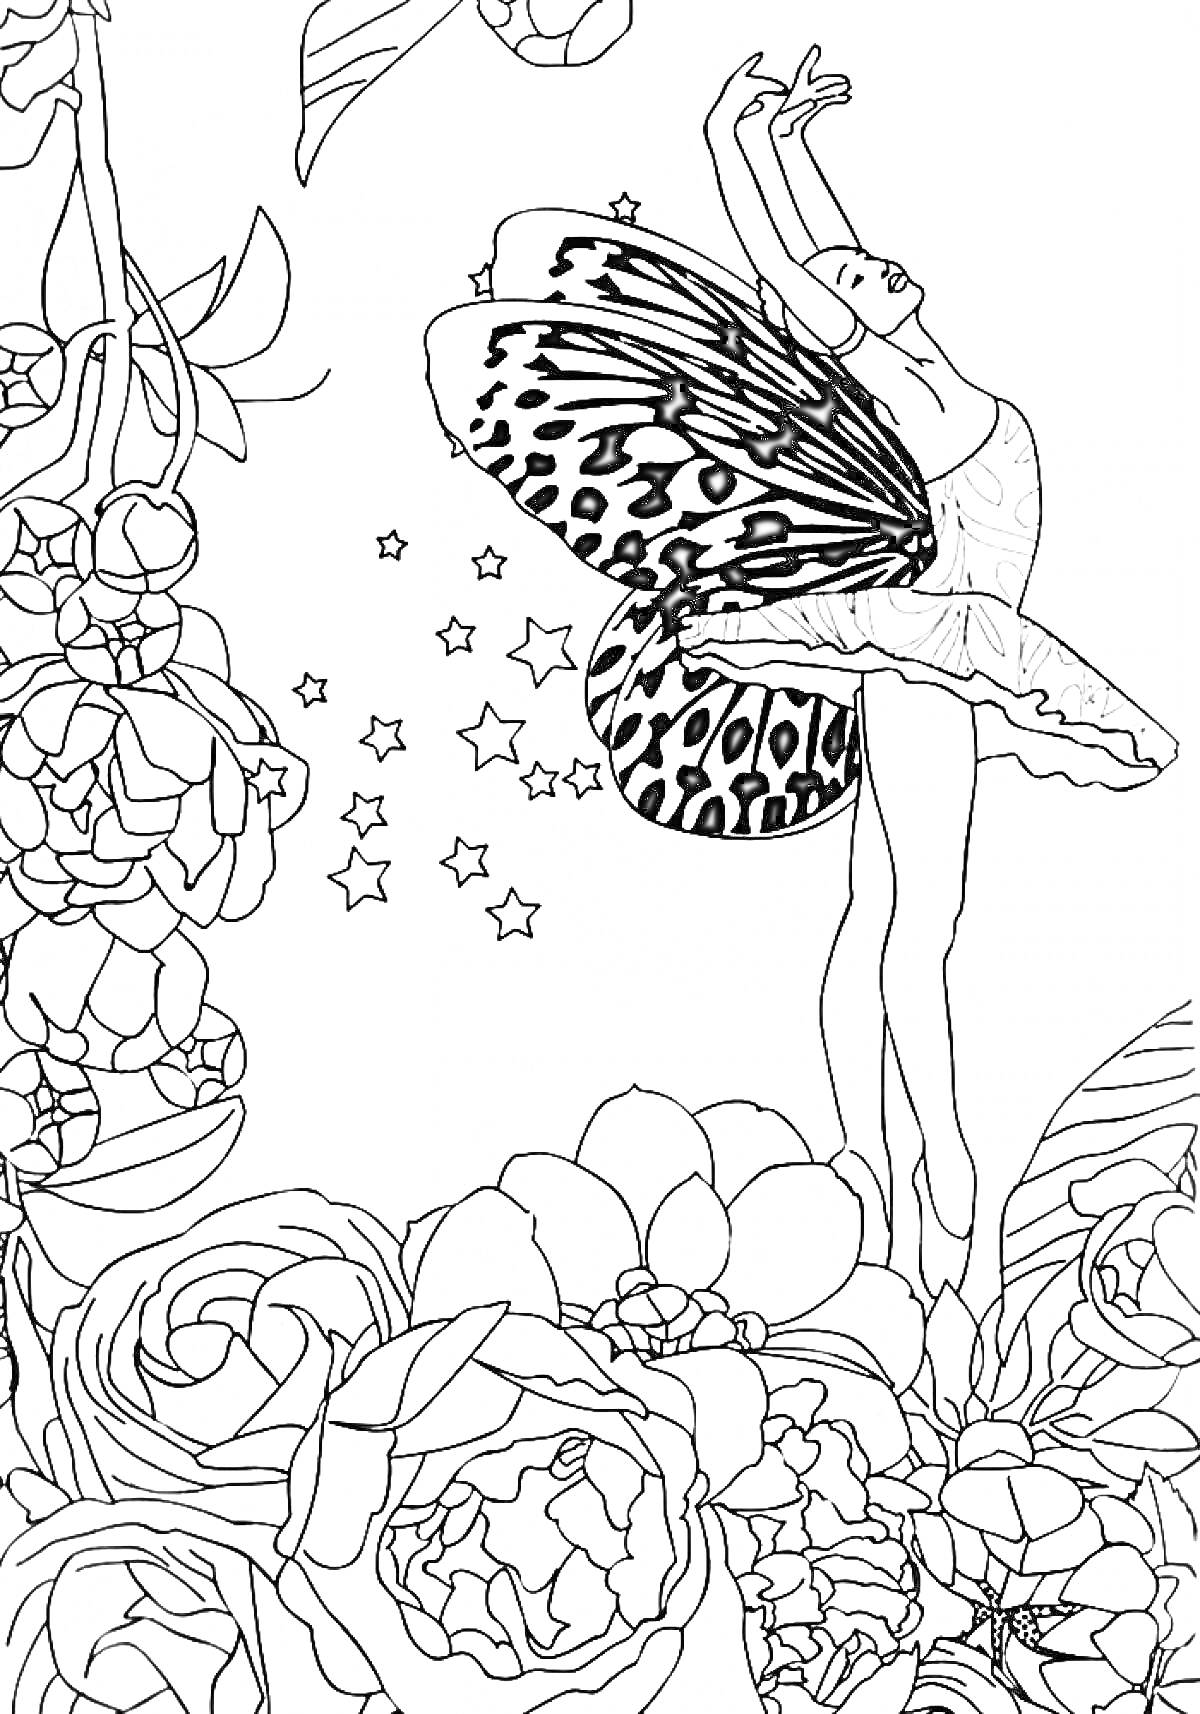 Раскраска Балерина с крыльями бабочки среди цветов и звезд